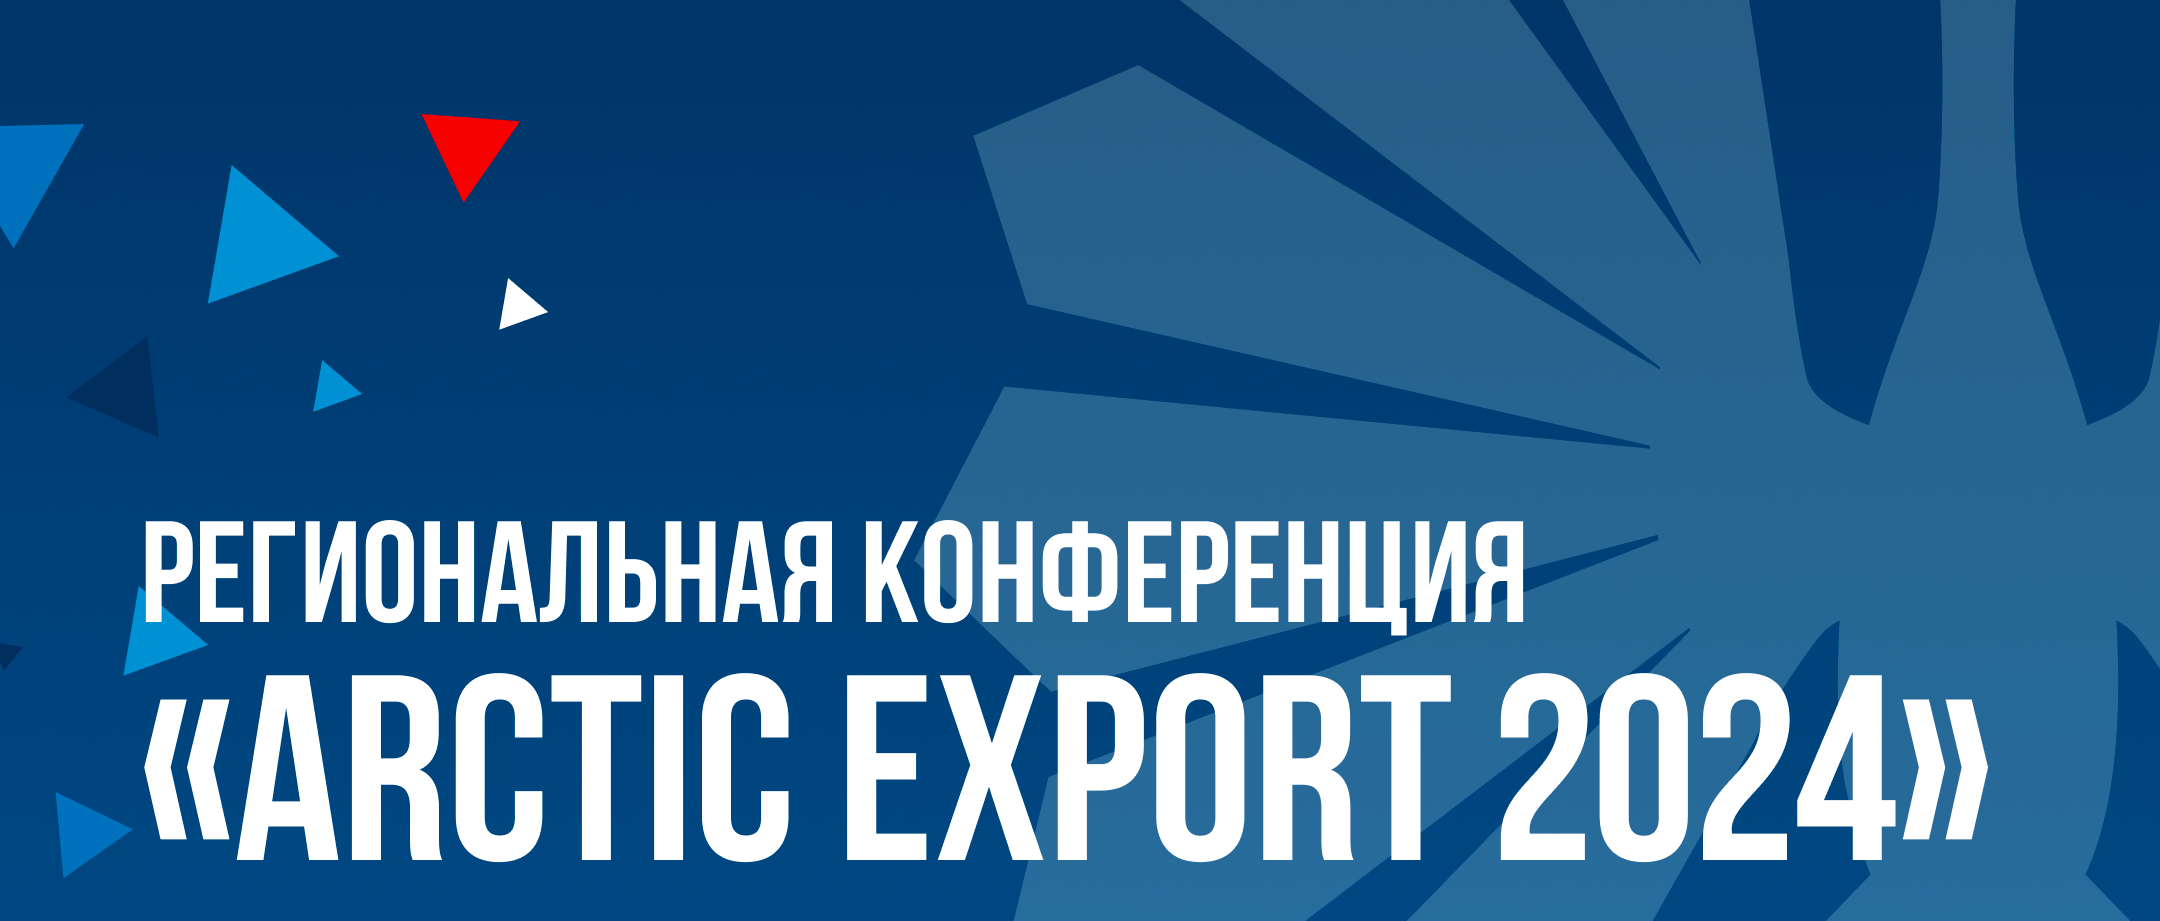 Arctic Export 2024: практические инструменты и стратегии для экспортеров